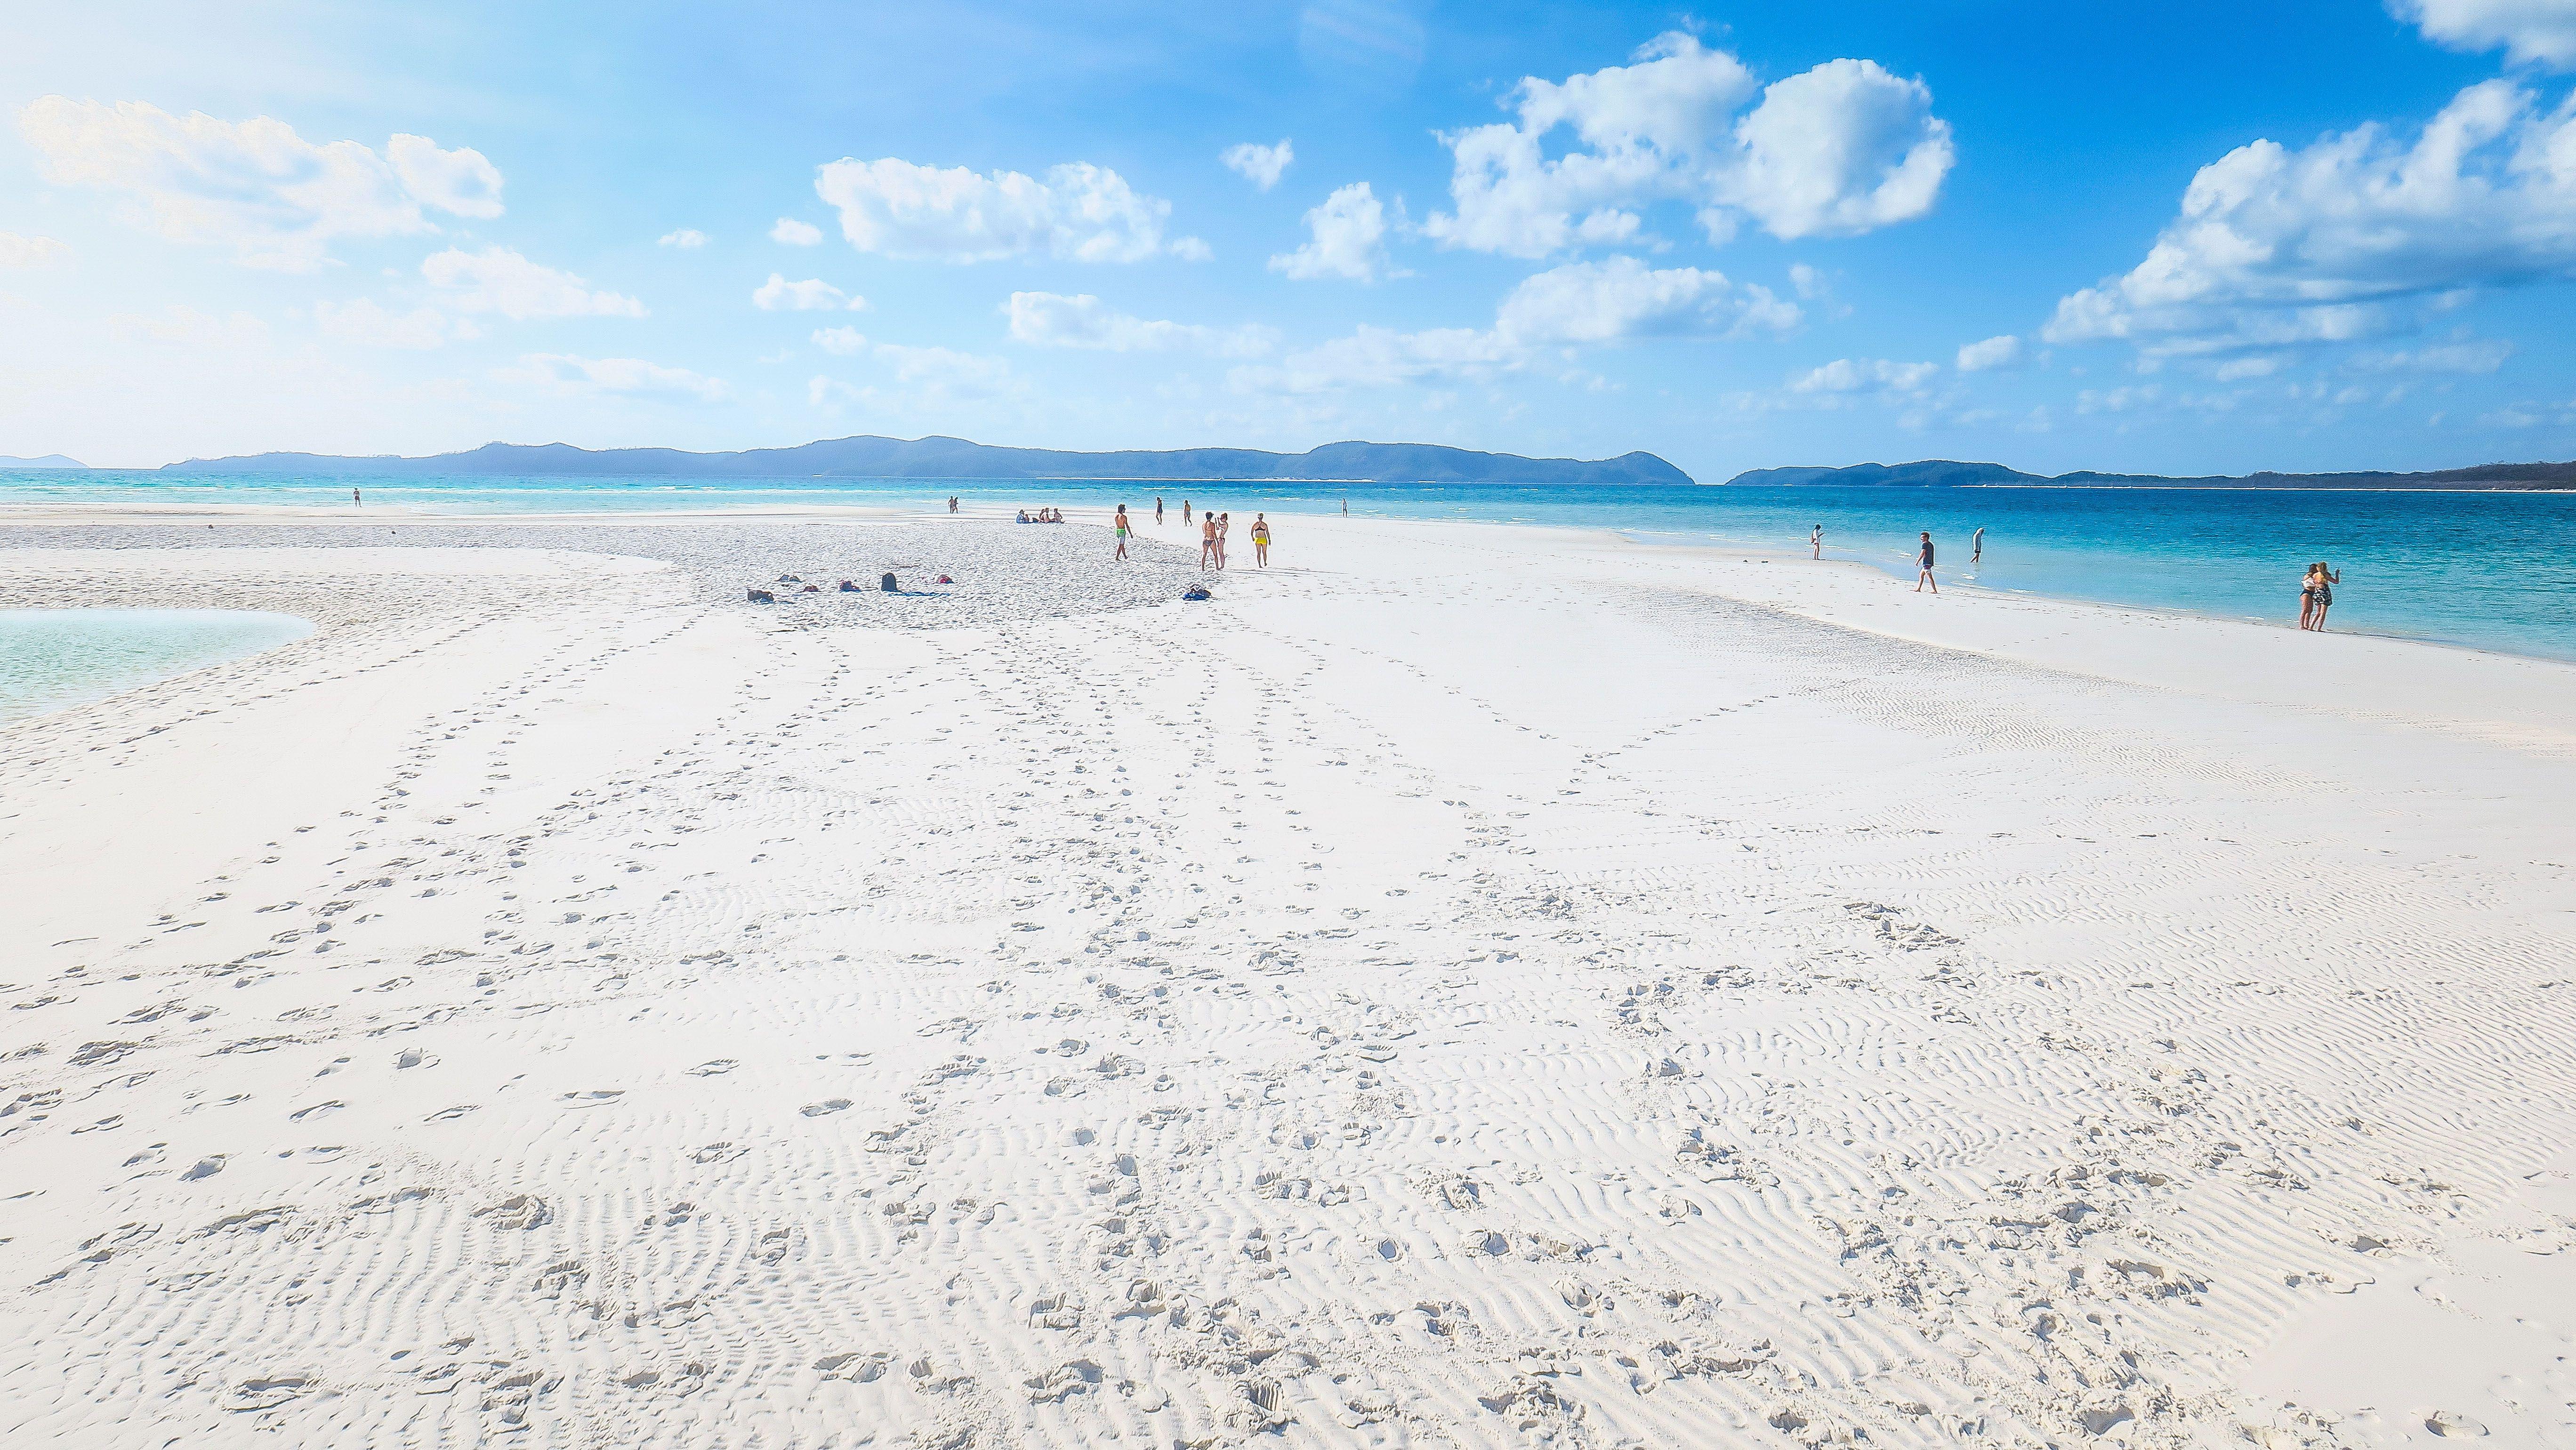 Il bianco della sabbia di Whitehaven Beach in Australia, una tra le spiagge più belle del mondo, è dovuto all’abbondante presenza di silice (98%). Fa parte del Parco Nazionale delle Isole Whitsunday, arcipelago nel cuore della Grande Barriera Corallina.